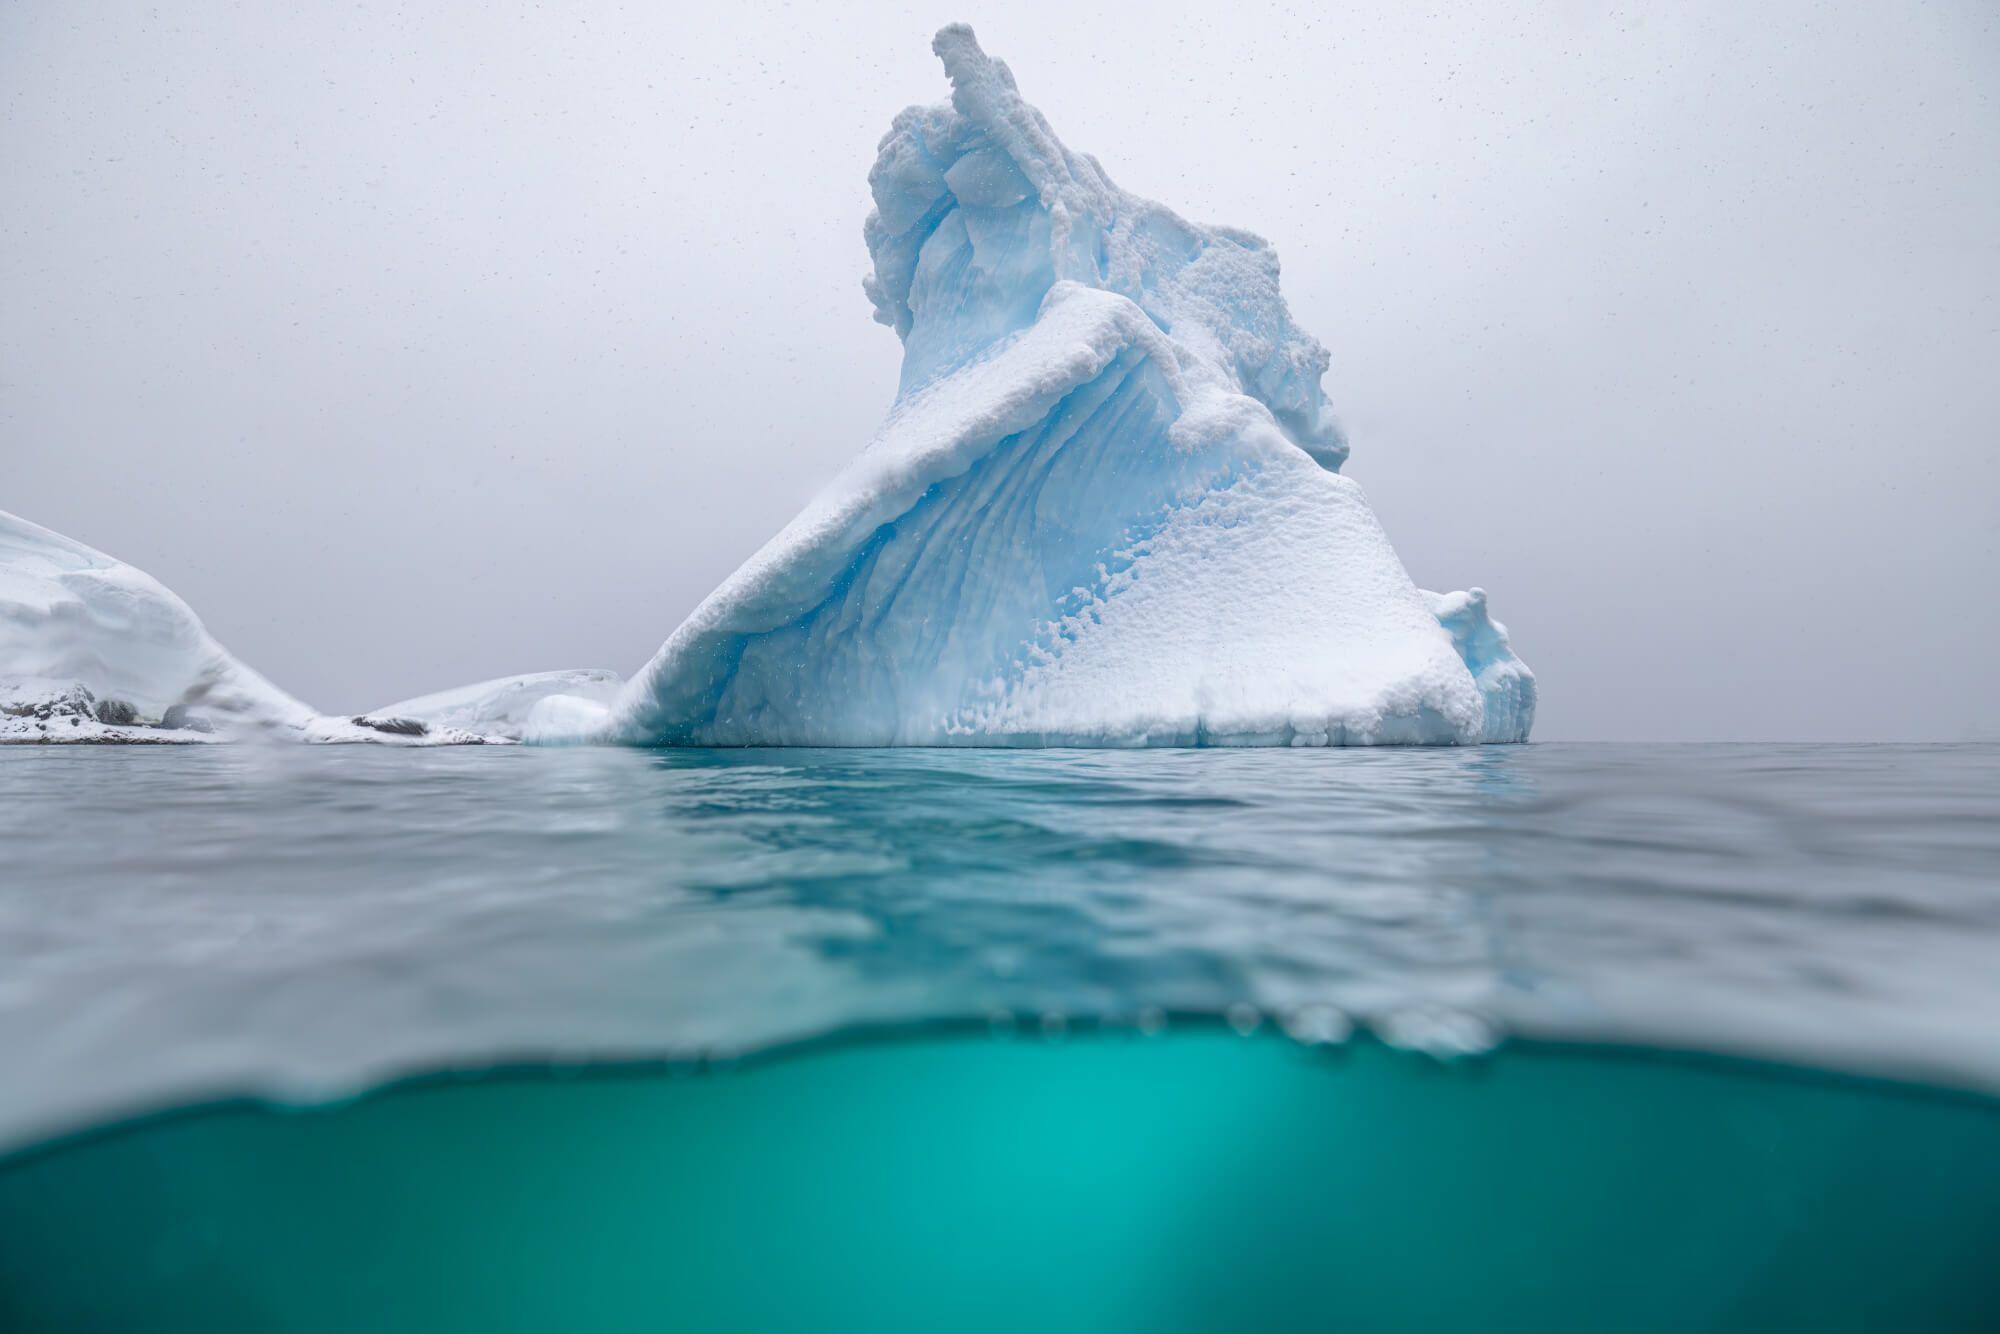 منظر جبل الجليد من تحت الماء في القطب الجنوبي. المصور: أرتيم شيستاكوف. المكان: القطب الجنوبي.